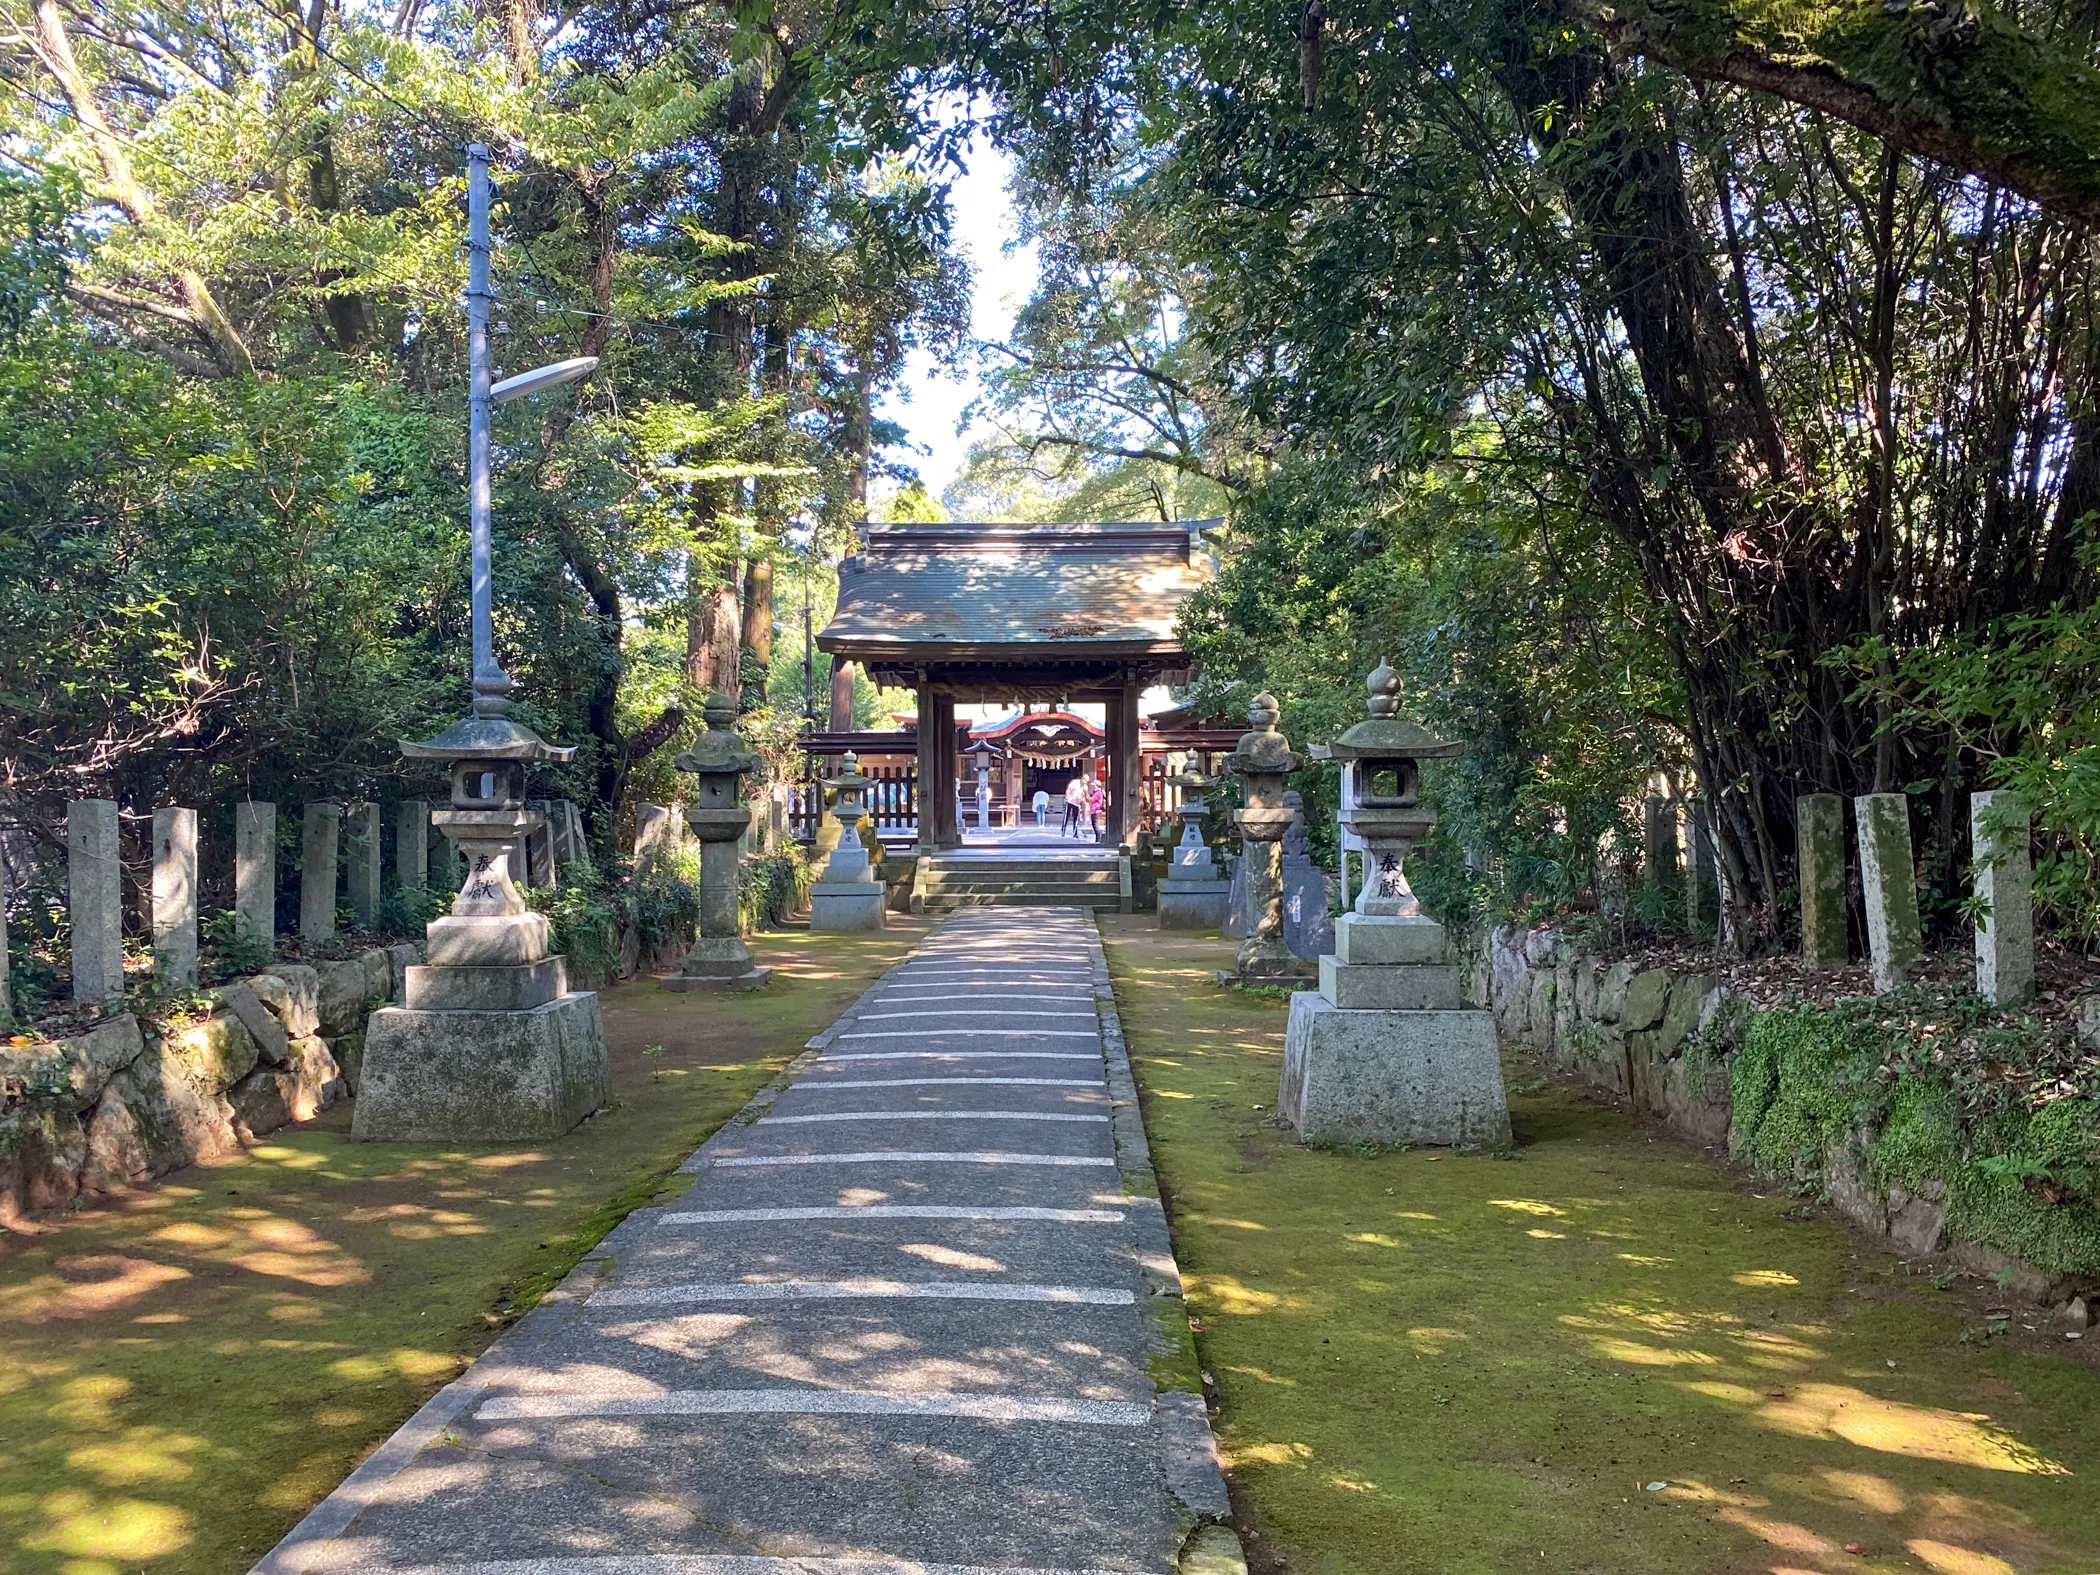 「筑紫神社」本殿へと続く道3